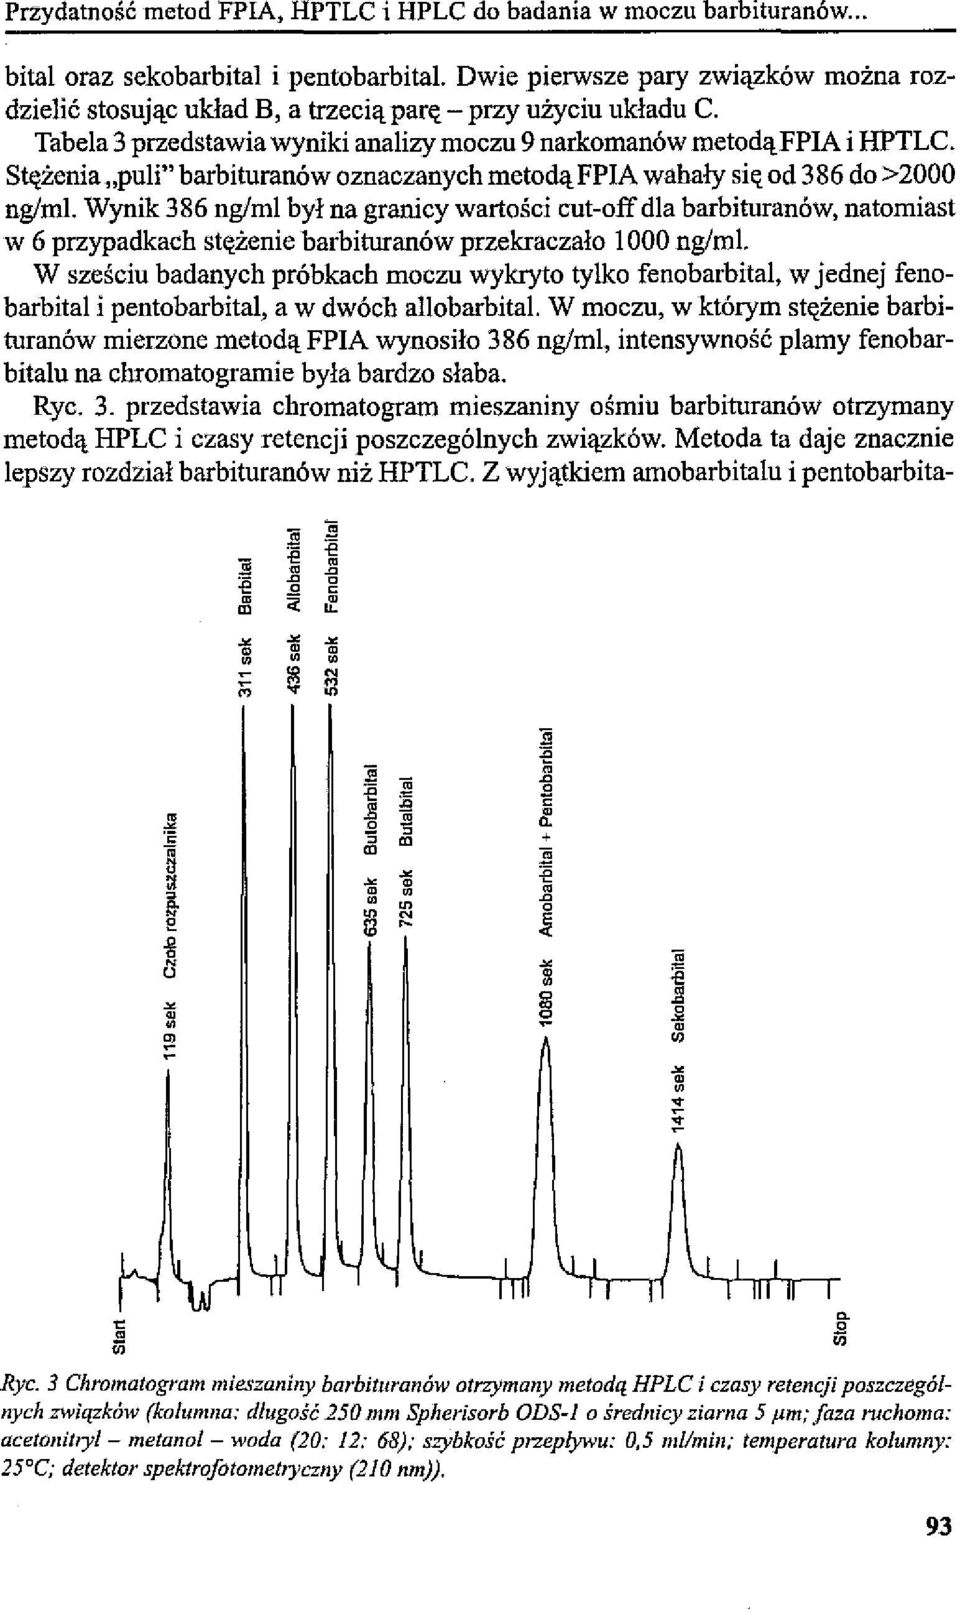 Stężenia "puli" barbituranów oznaczanych metodą FPIA wahały się od 386 do >2000 ng/ml.